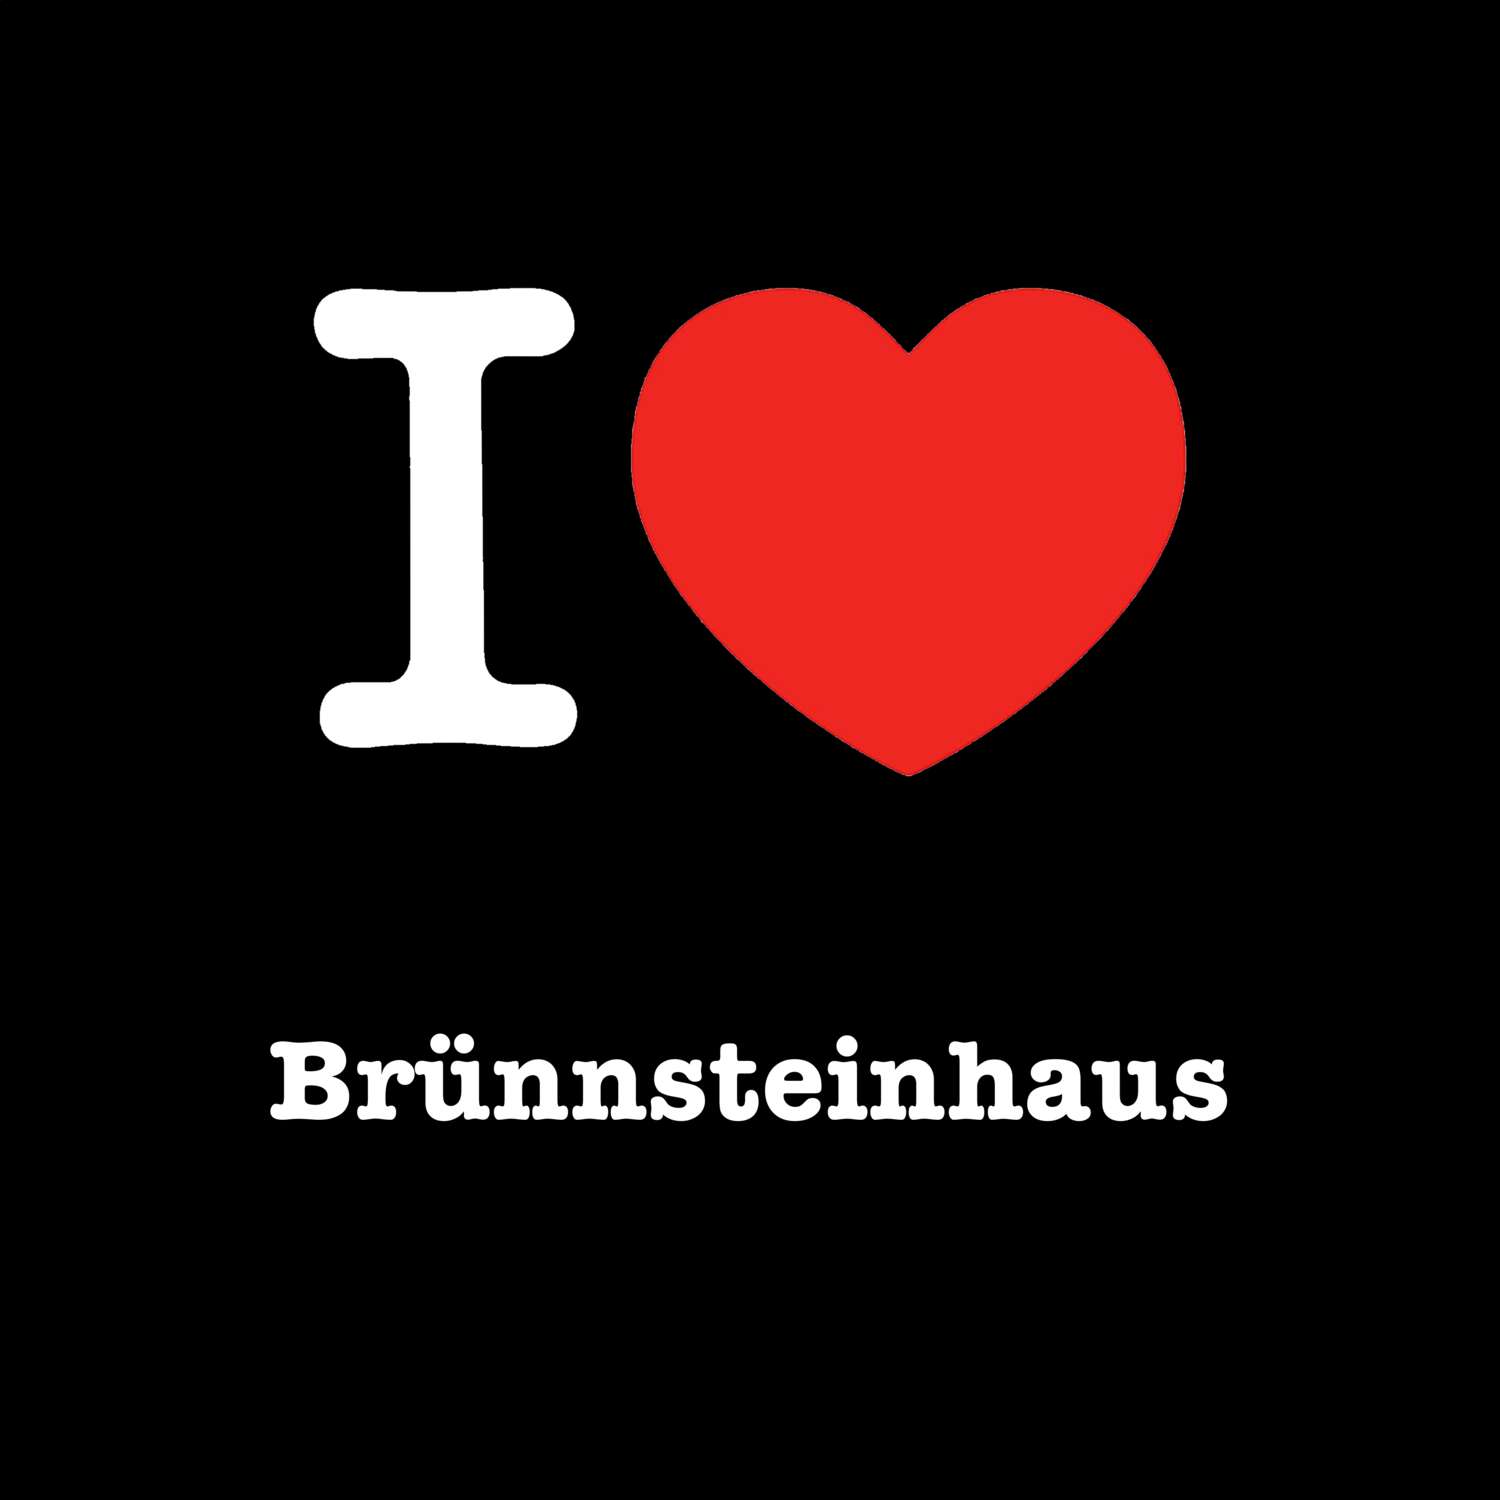 Brünnsteinhaus T-Shirt »I love«